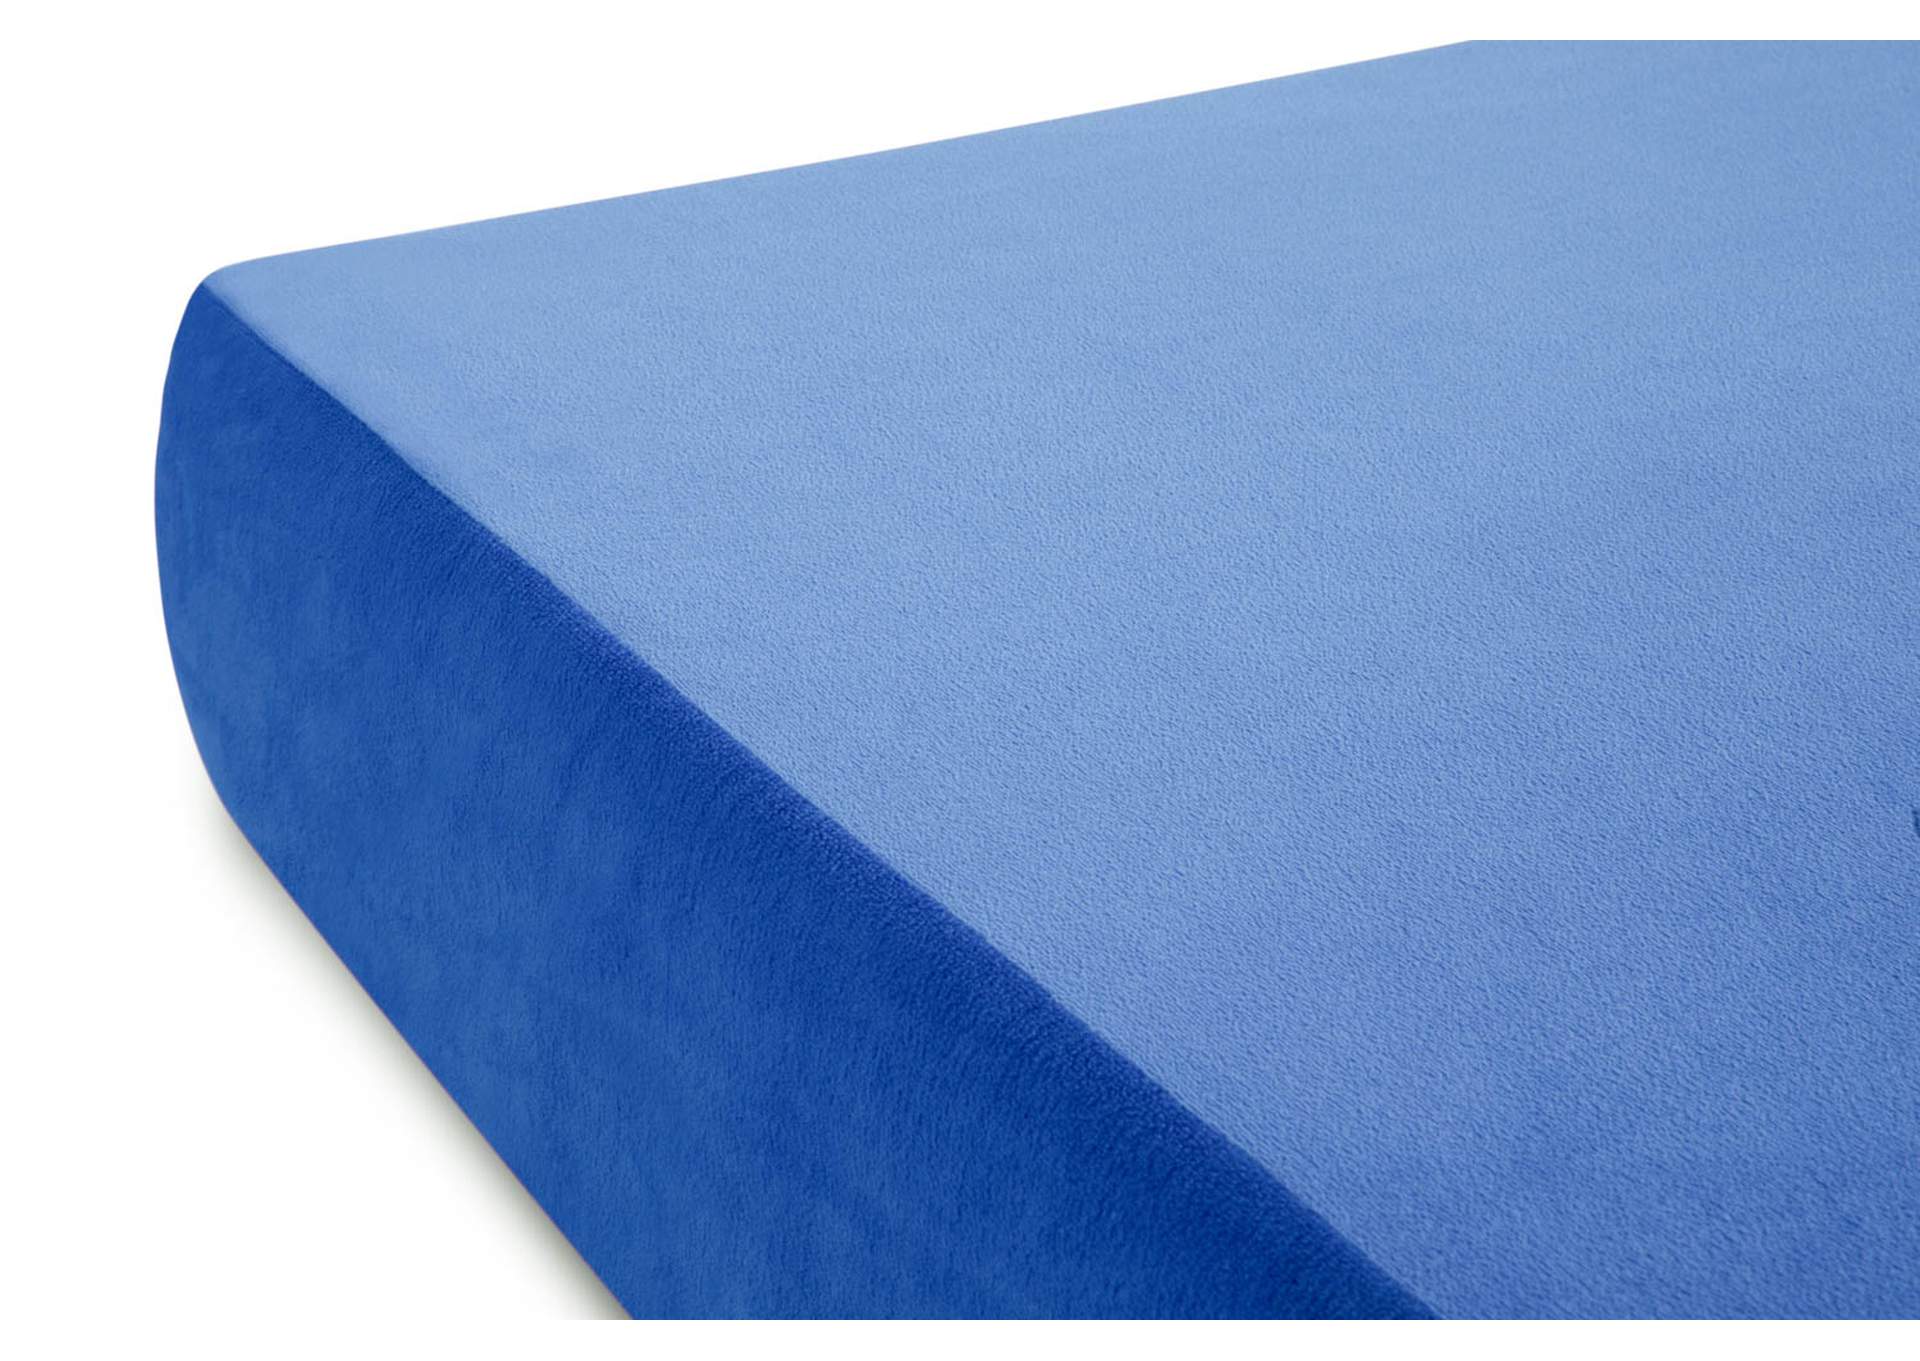 Weekender Blue Brighton Bed Gel Memory Foam Twin Mattress,Malouf